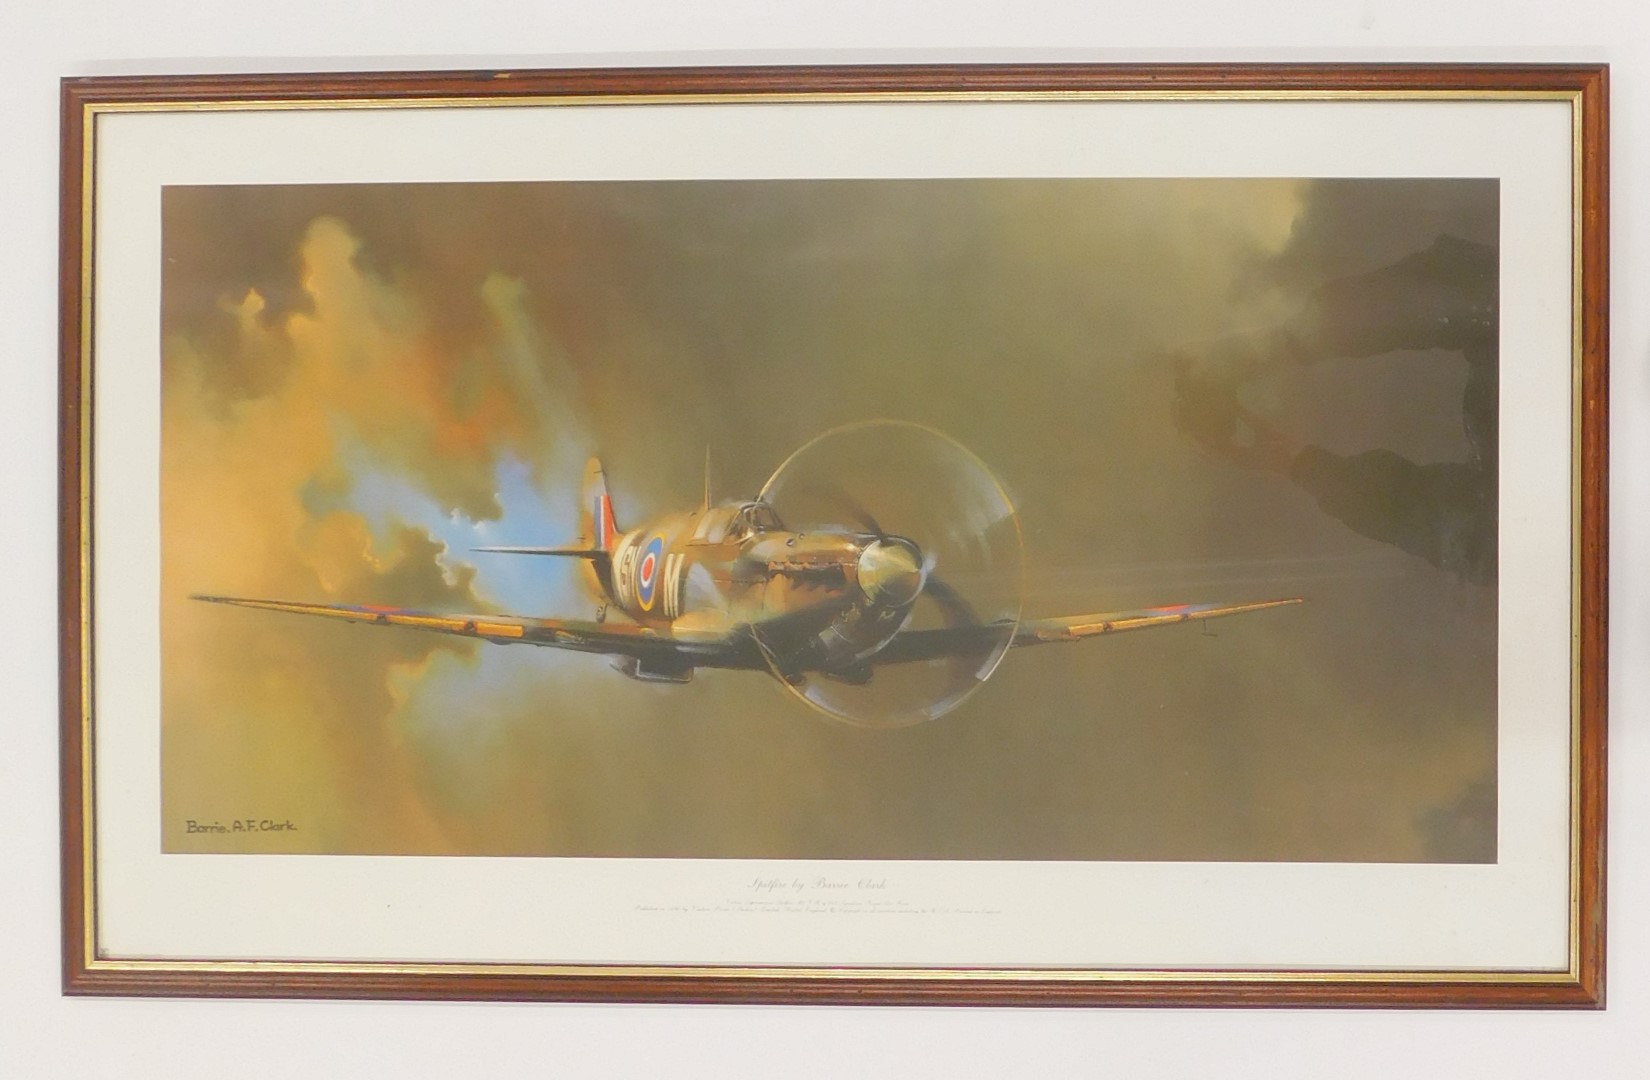 After Barry AF Clarke. Spitfire print, 45cm x 90.5cm, framed. - Image 2 of 4